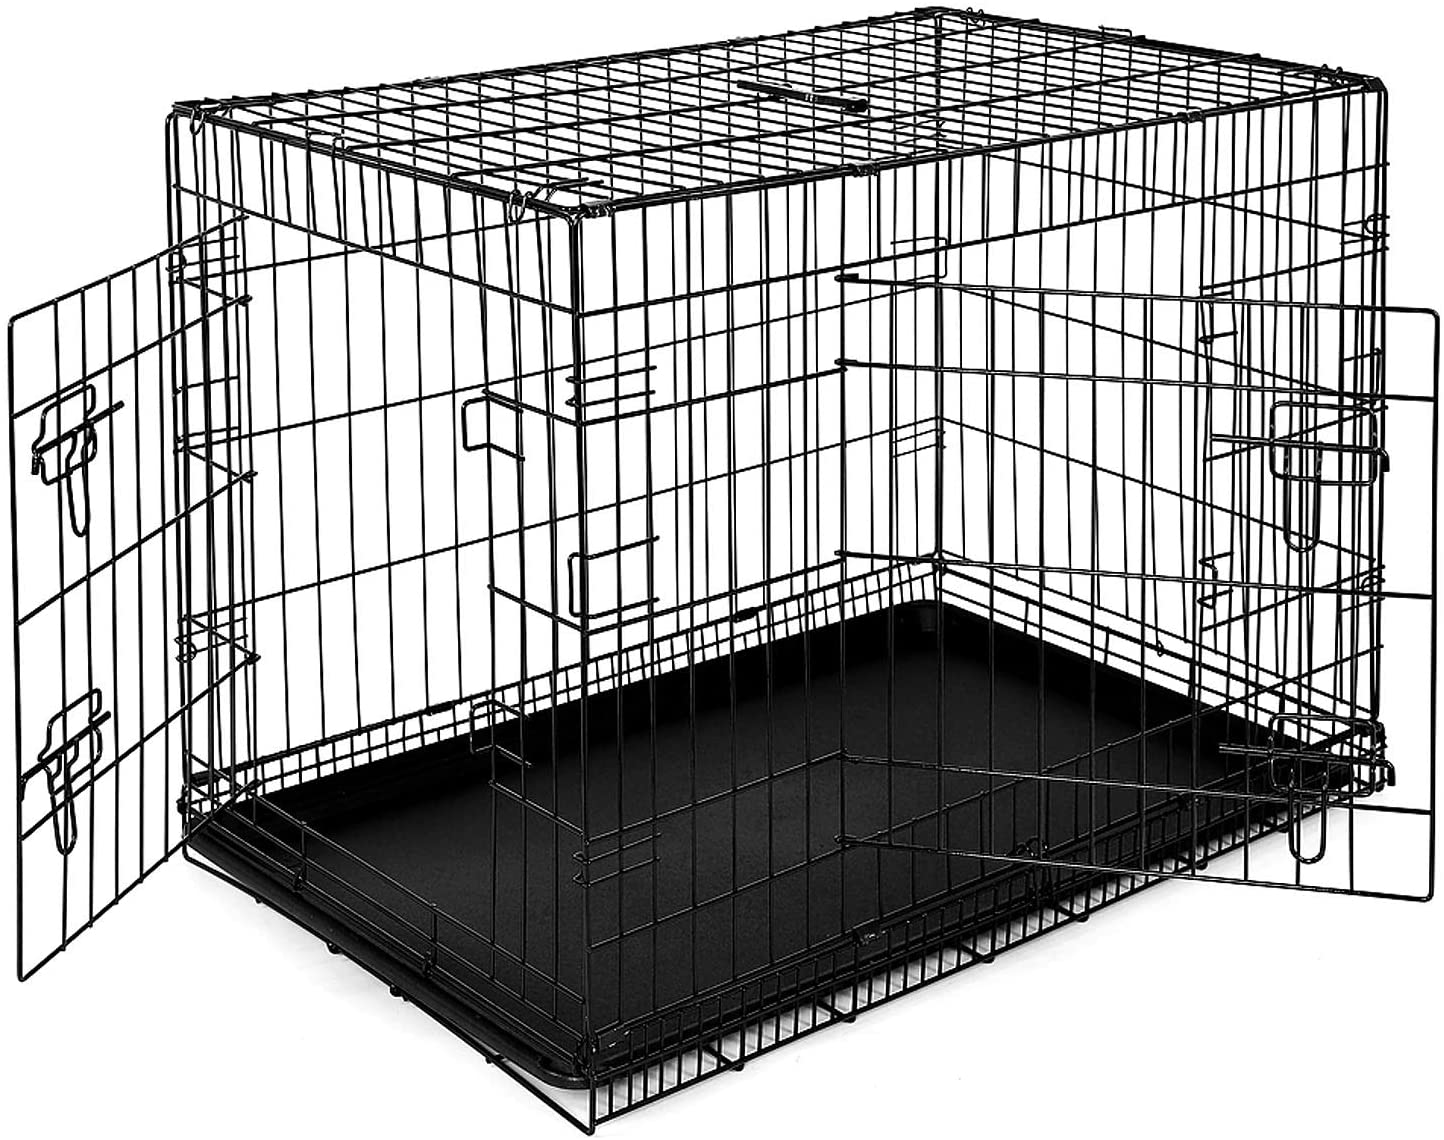  dibea DC00493, jaula de transporte para perros y animales pequeños, caja robusta hecha de alambre fuerte, plegable / con bisagras, 2 puertas, con bandeja inferior, tamaño XL 